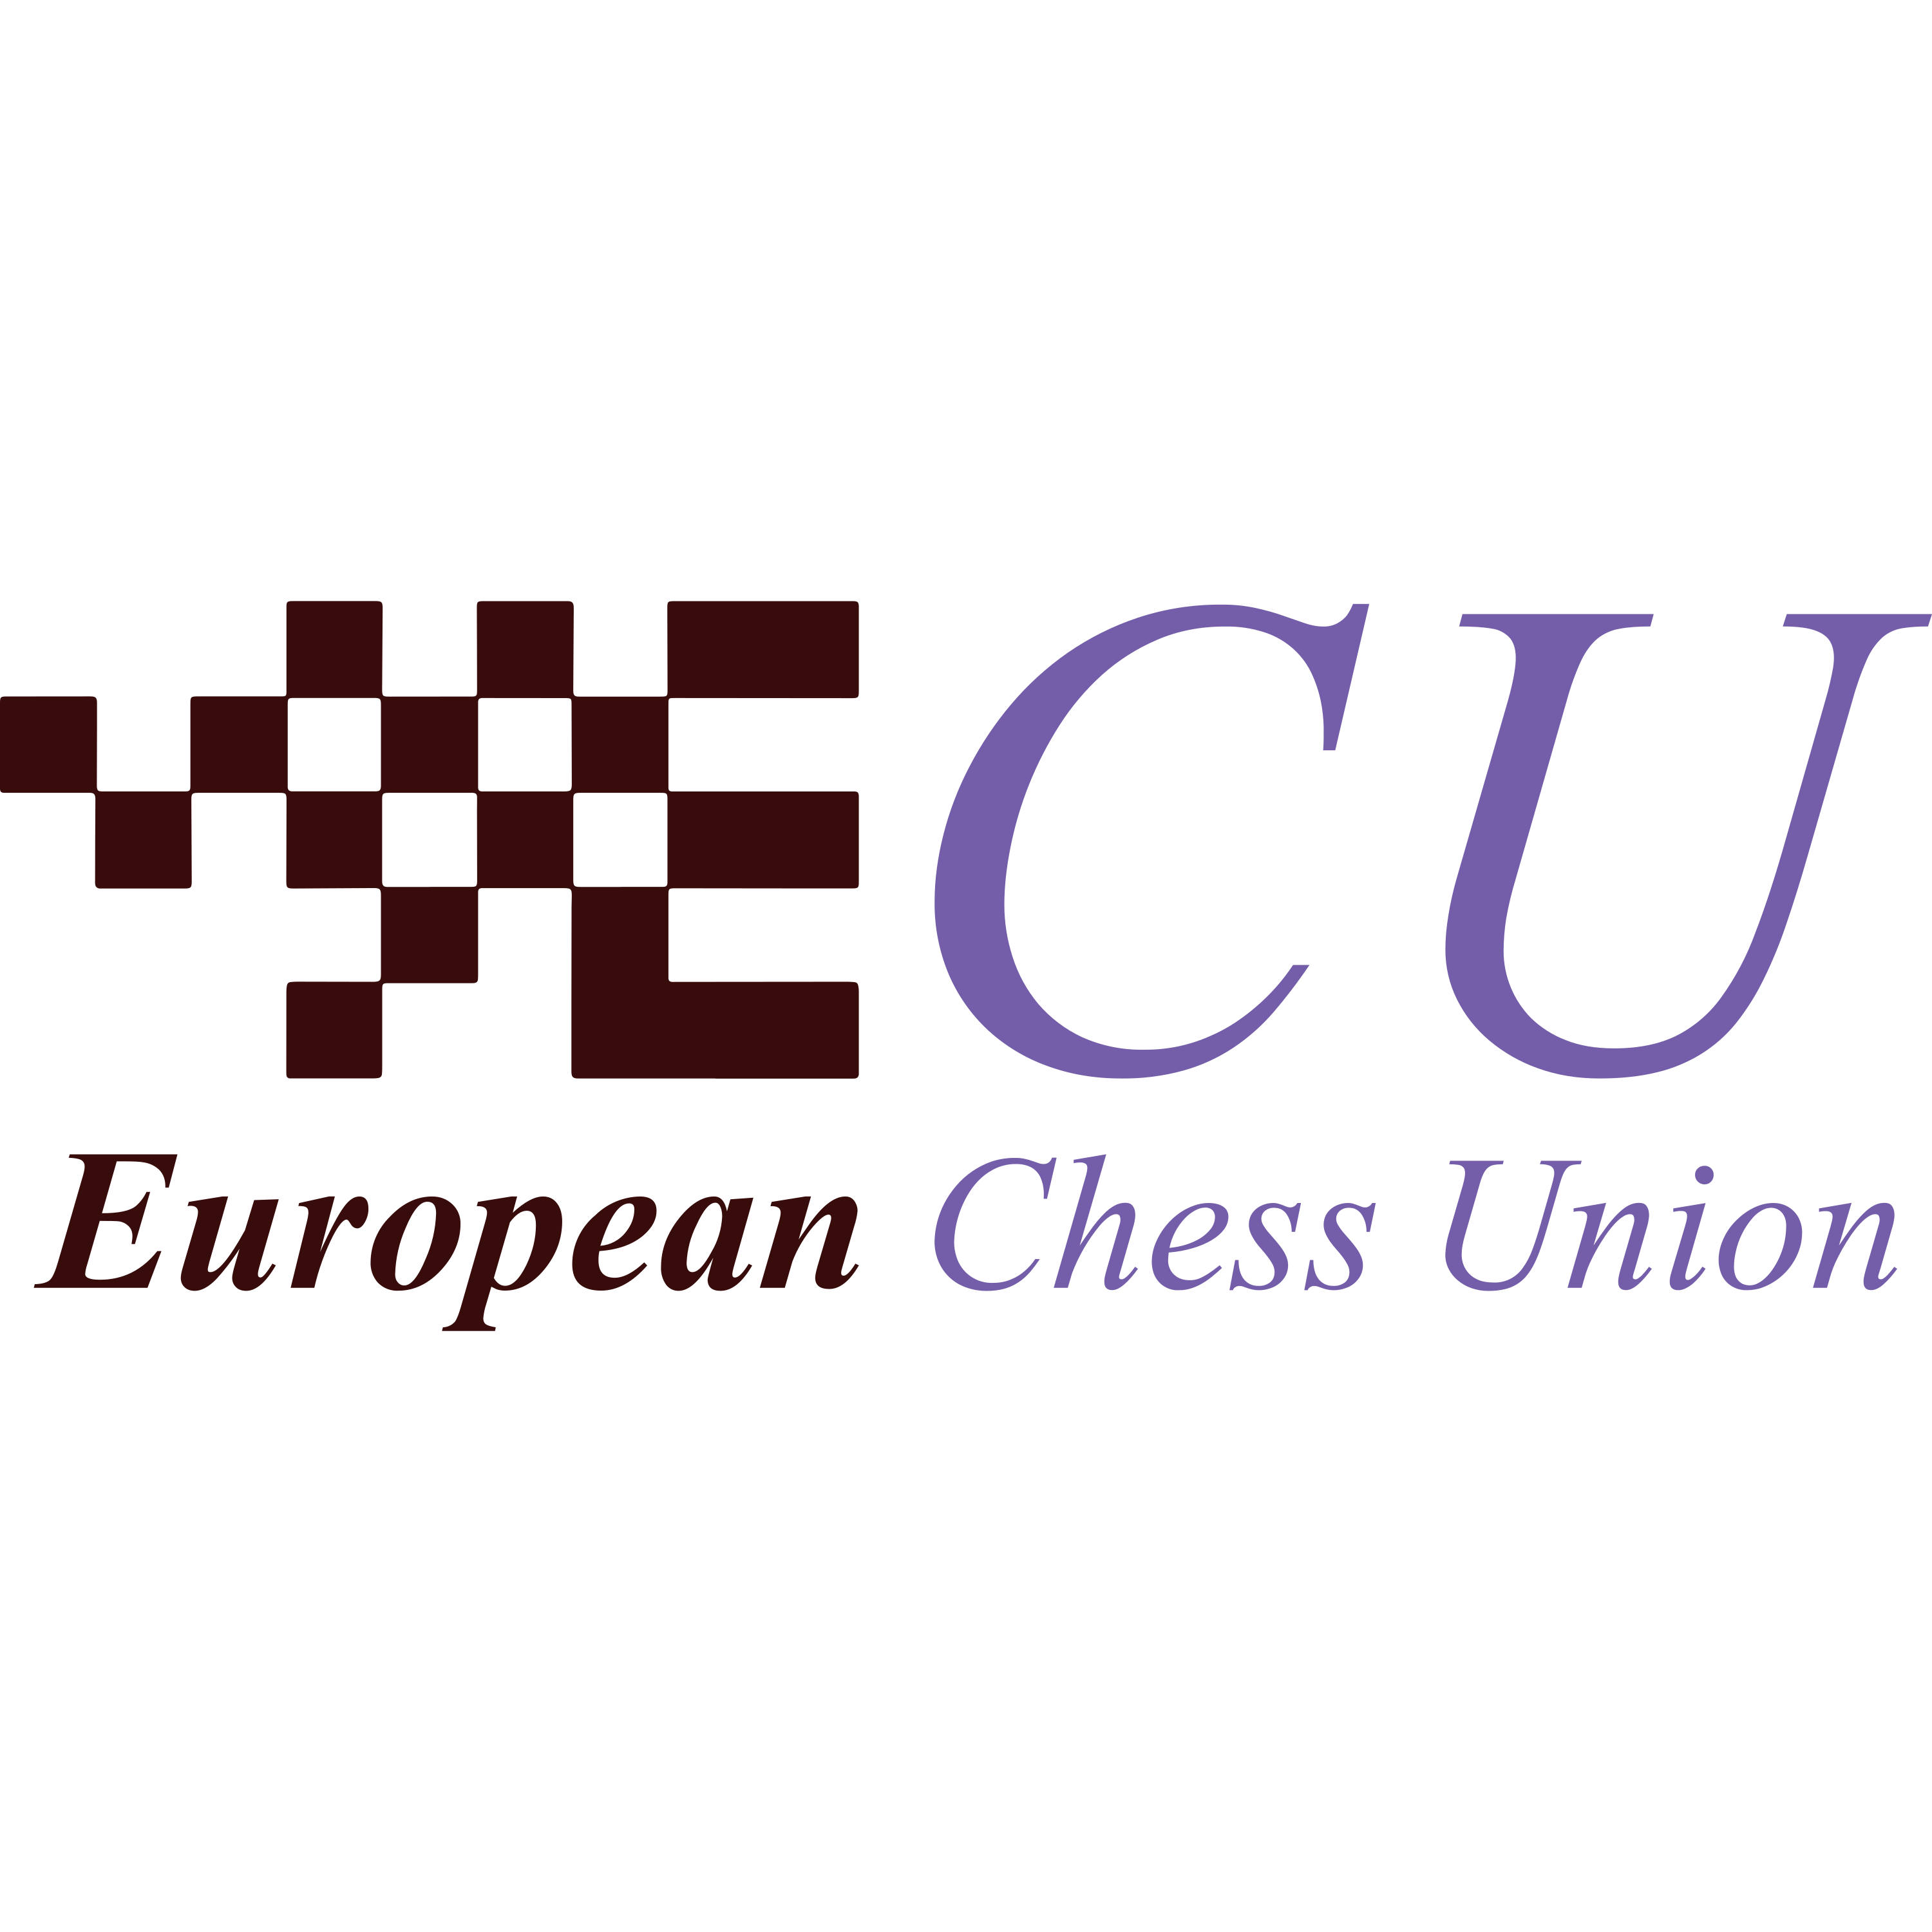 European Chess Union Logo  Transparent Photo